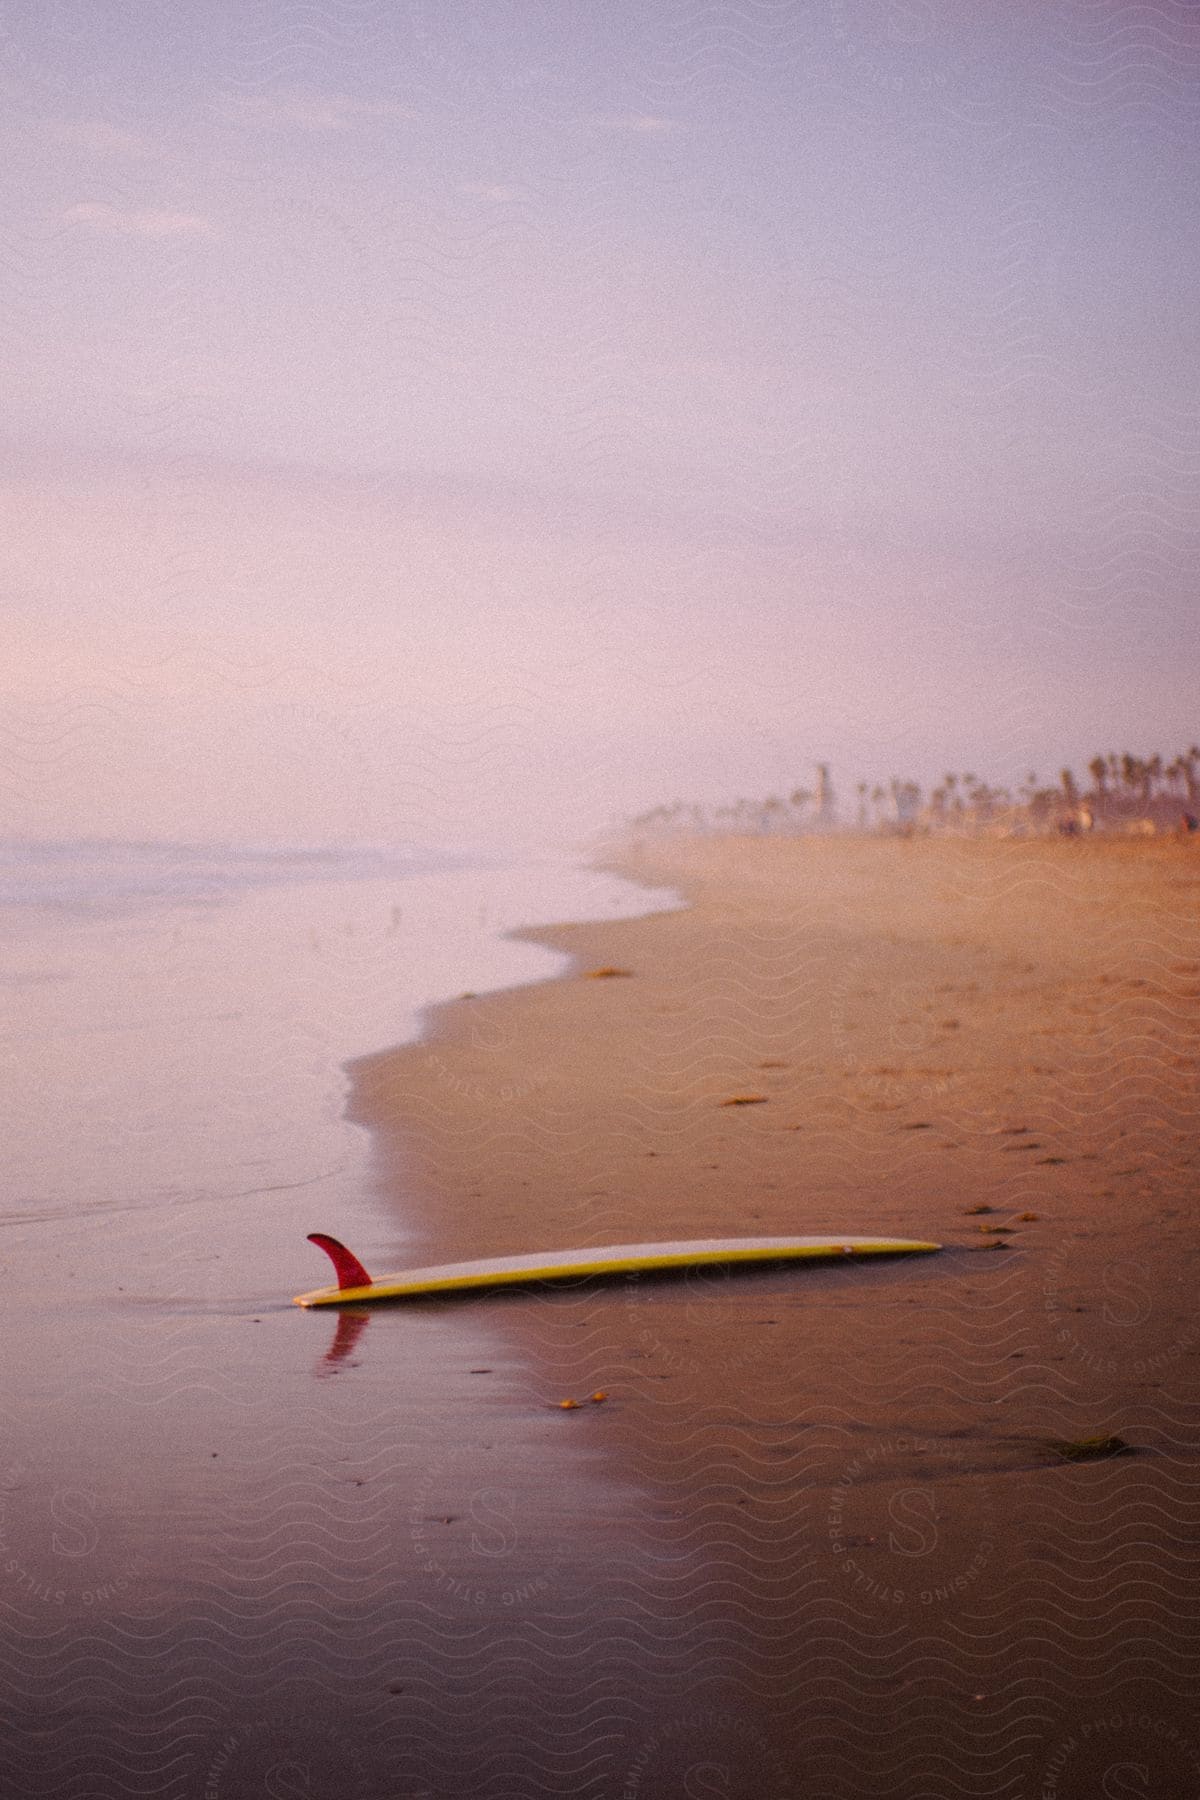 A surfboard on a beach at sunrise